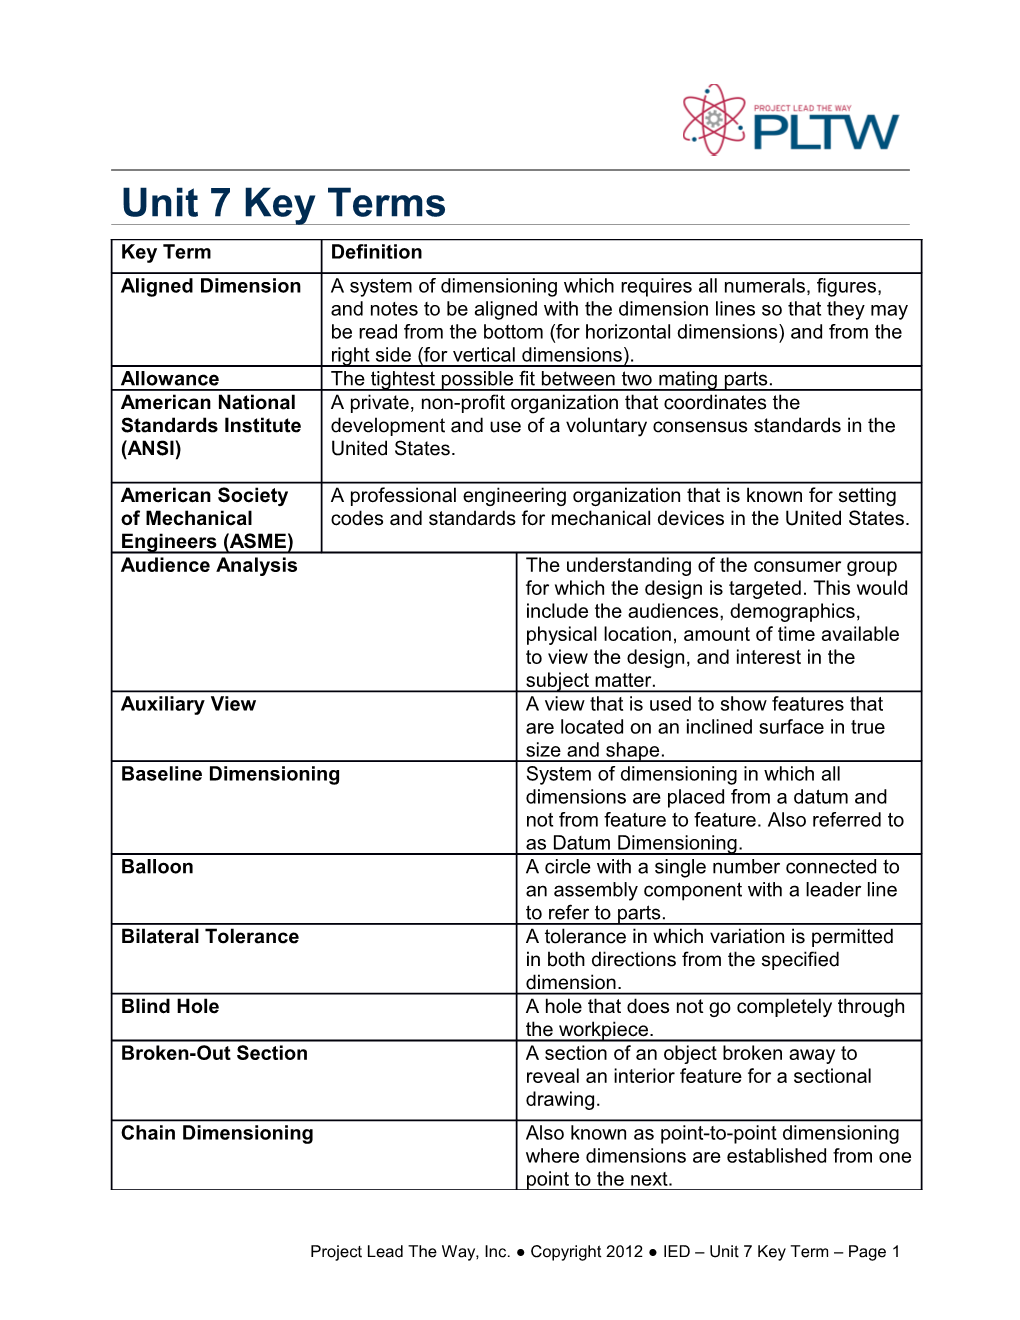 Unit 7 Key Term